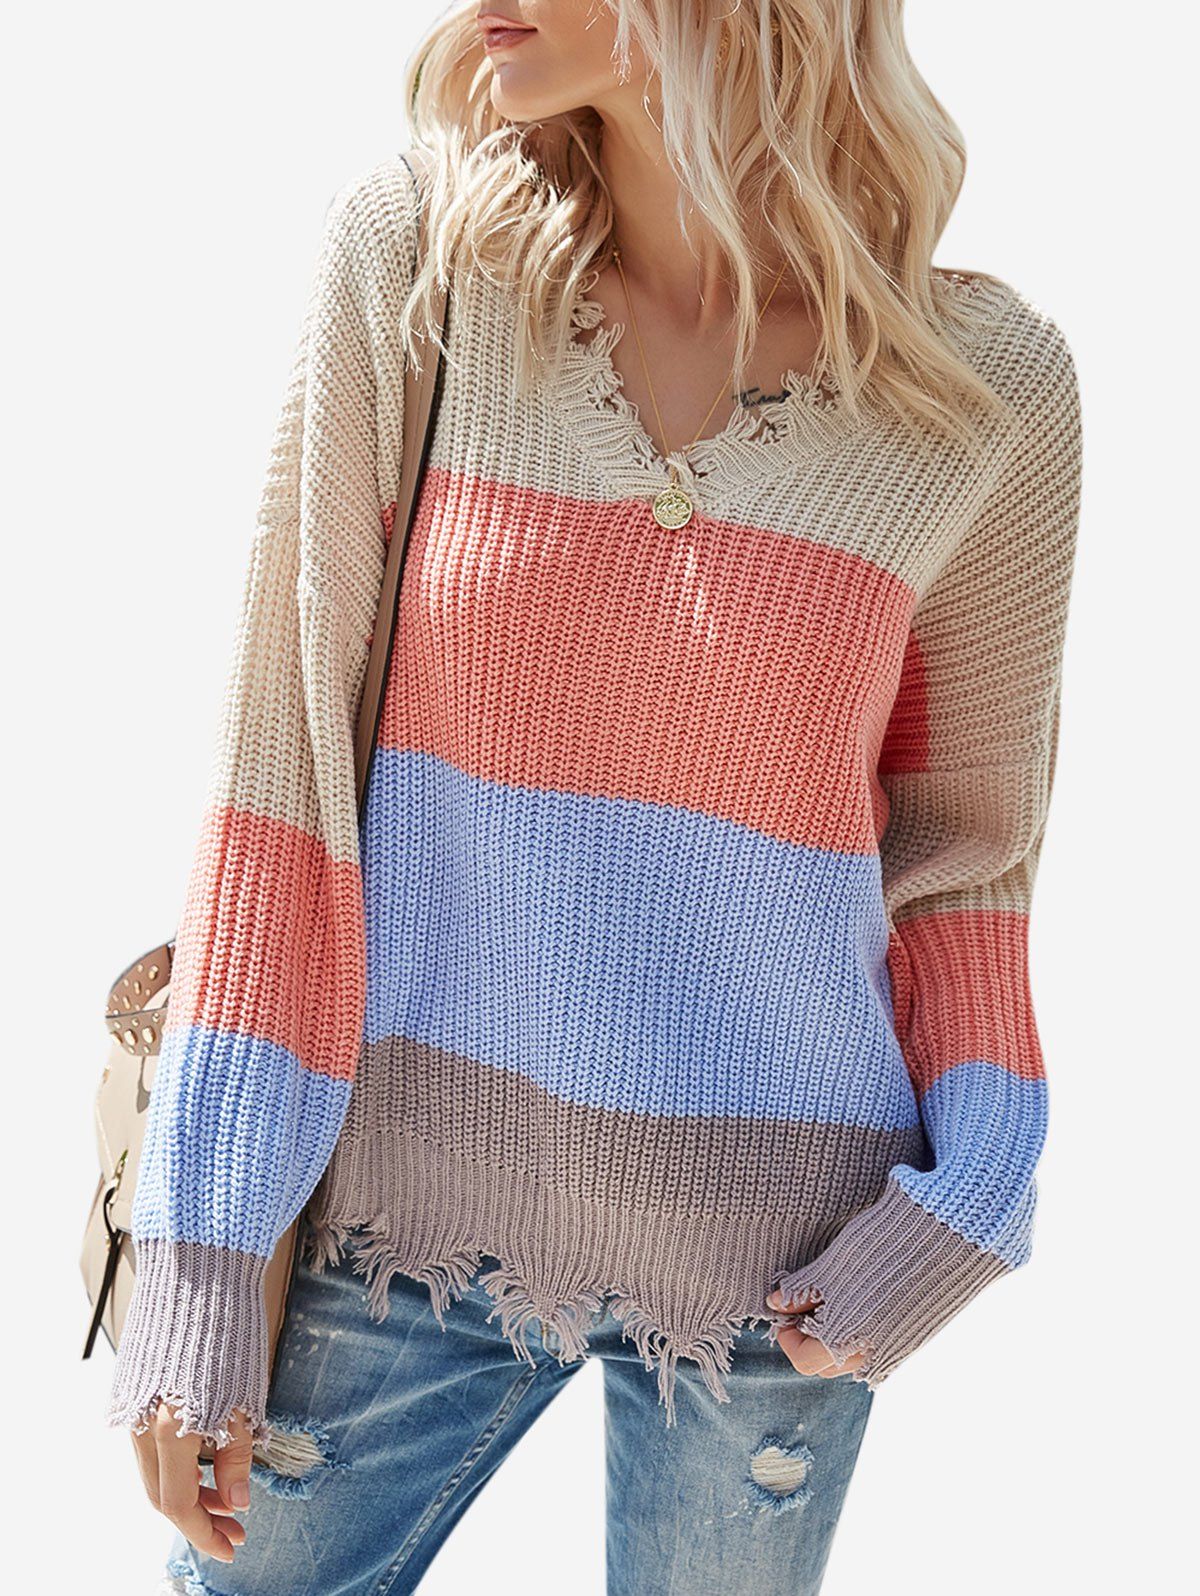 Colorblock V Neck Distressed Sweater - multicolor L